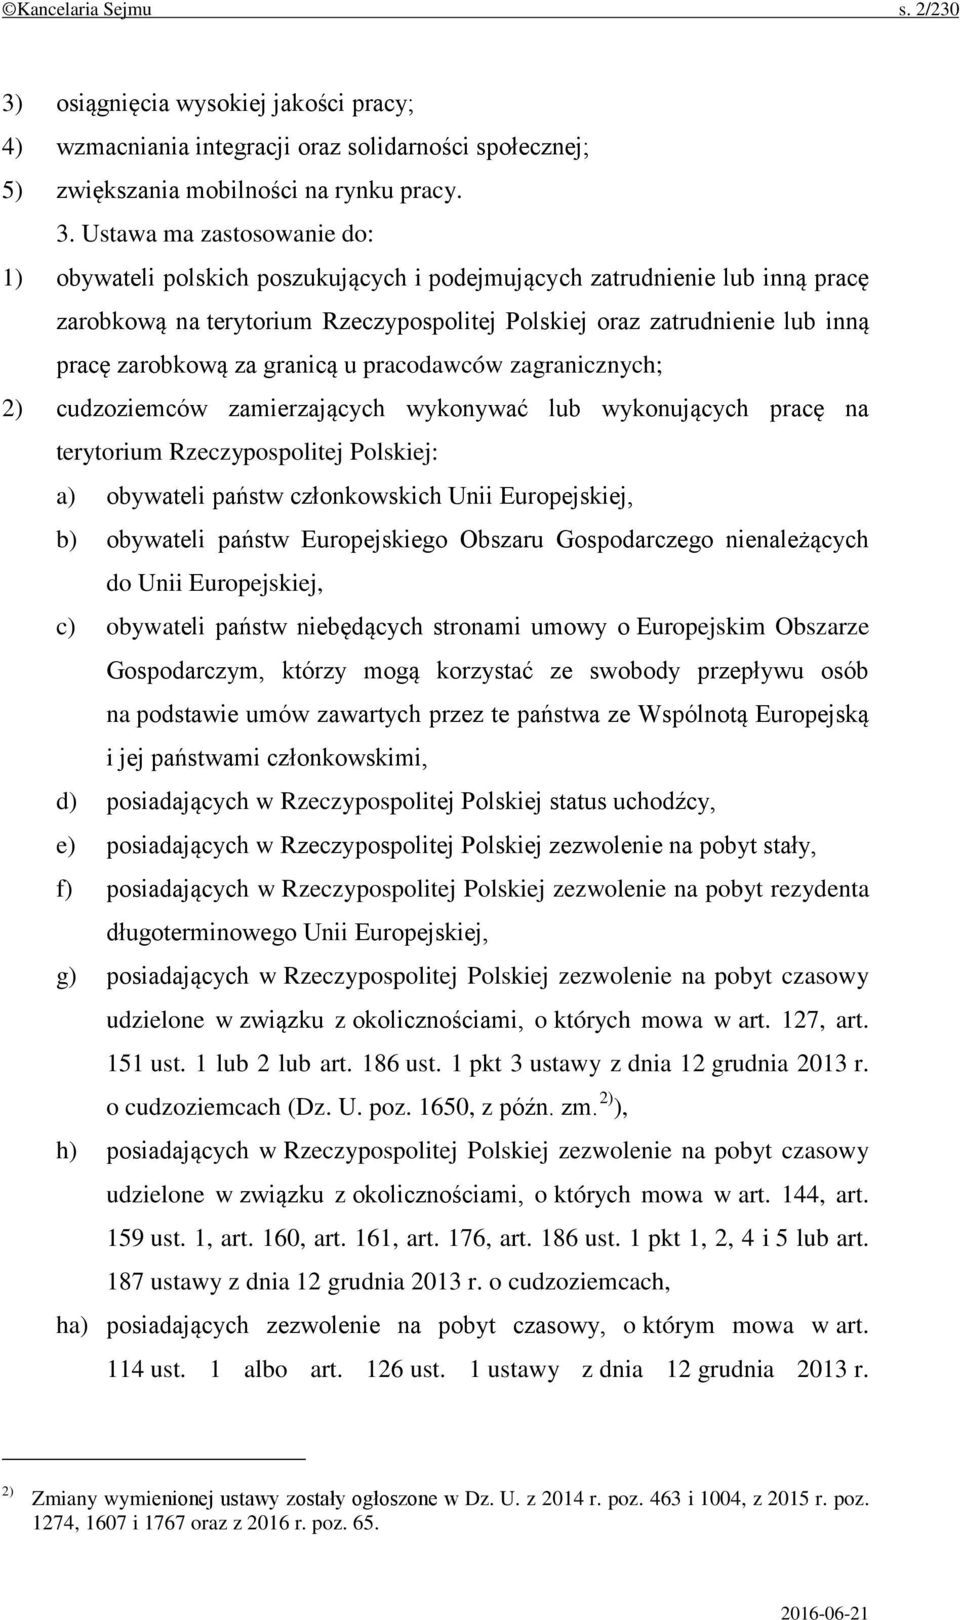 Ustawa ma zastosowanie do: 1) obywateli polskich poszukujących i podejmujących zatrudnienie lub inną pracę zarobkową na terytorium Rzeczypospolitej Polskiej oraz zatrudnienie lub inną pracę zarobkową